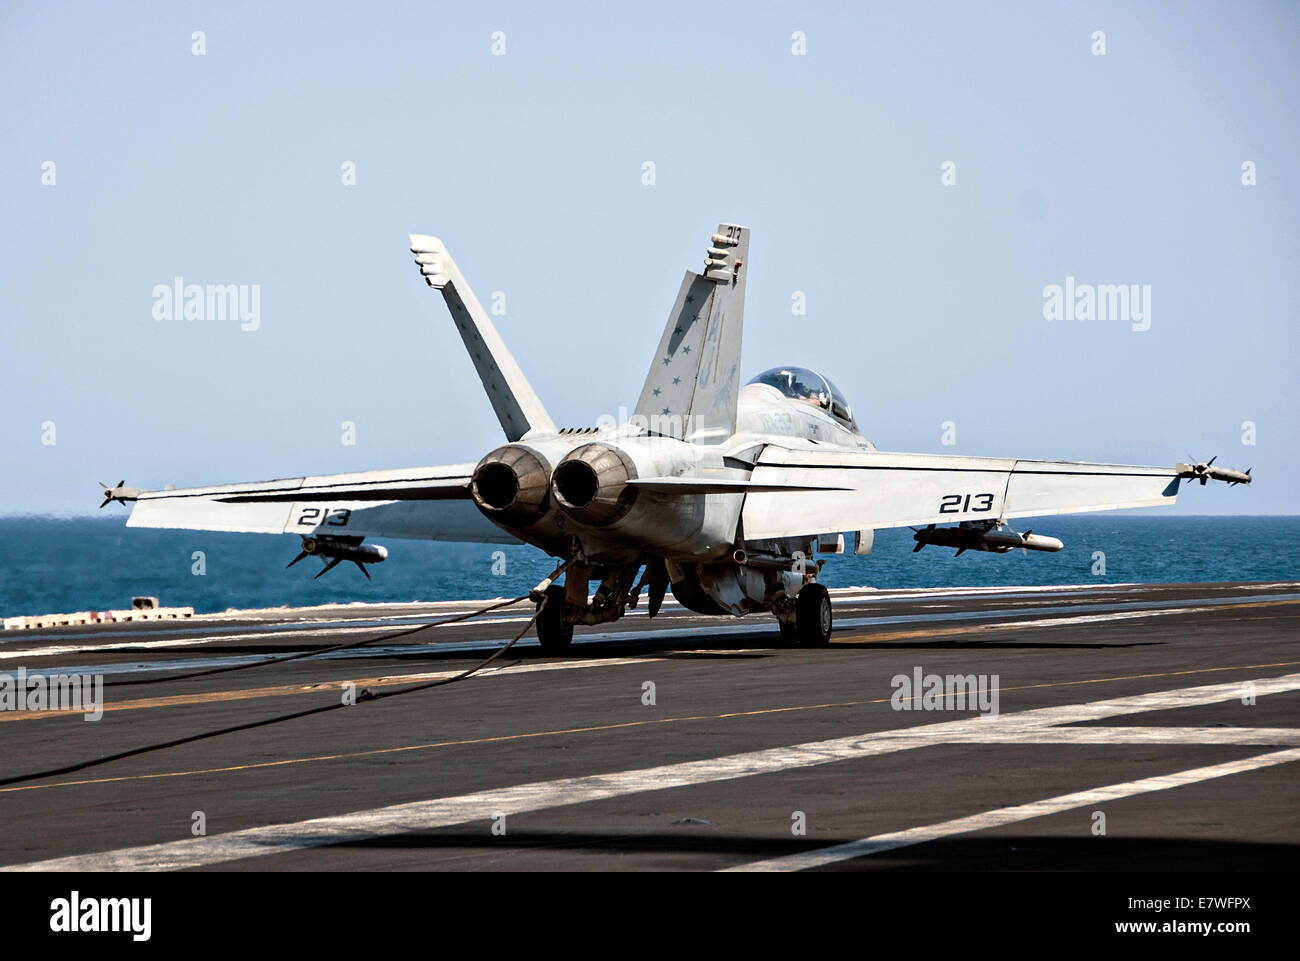 Un US Navy F/A-18F Super Hornet fighter aircraft atterra sul ponte di volo della portaerei USS George H.W. Bush dopo il ritorno da una lotta contro la sortita contro bersagli ISIS Settembre 23, 2014 nel Golfo Persico. Il militare ha lanciato il primo impatti diretti su bersagli ISIS all'interno della Siria. Foto Stock